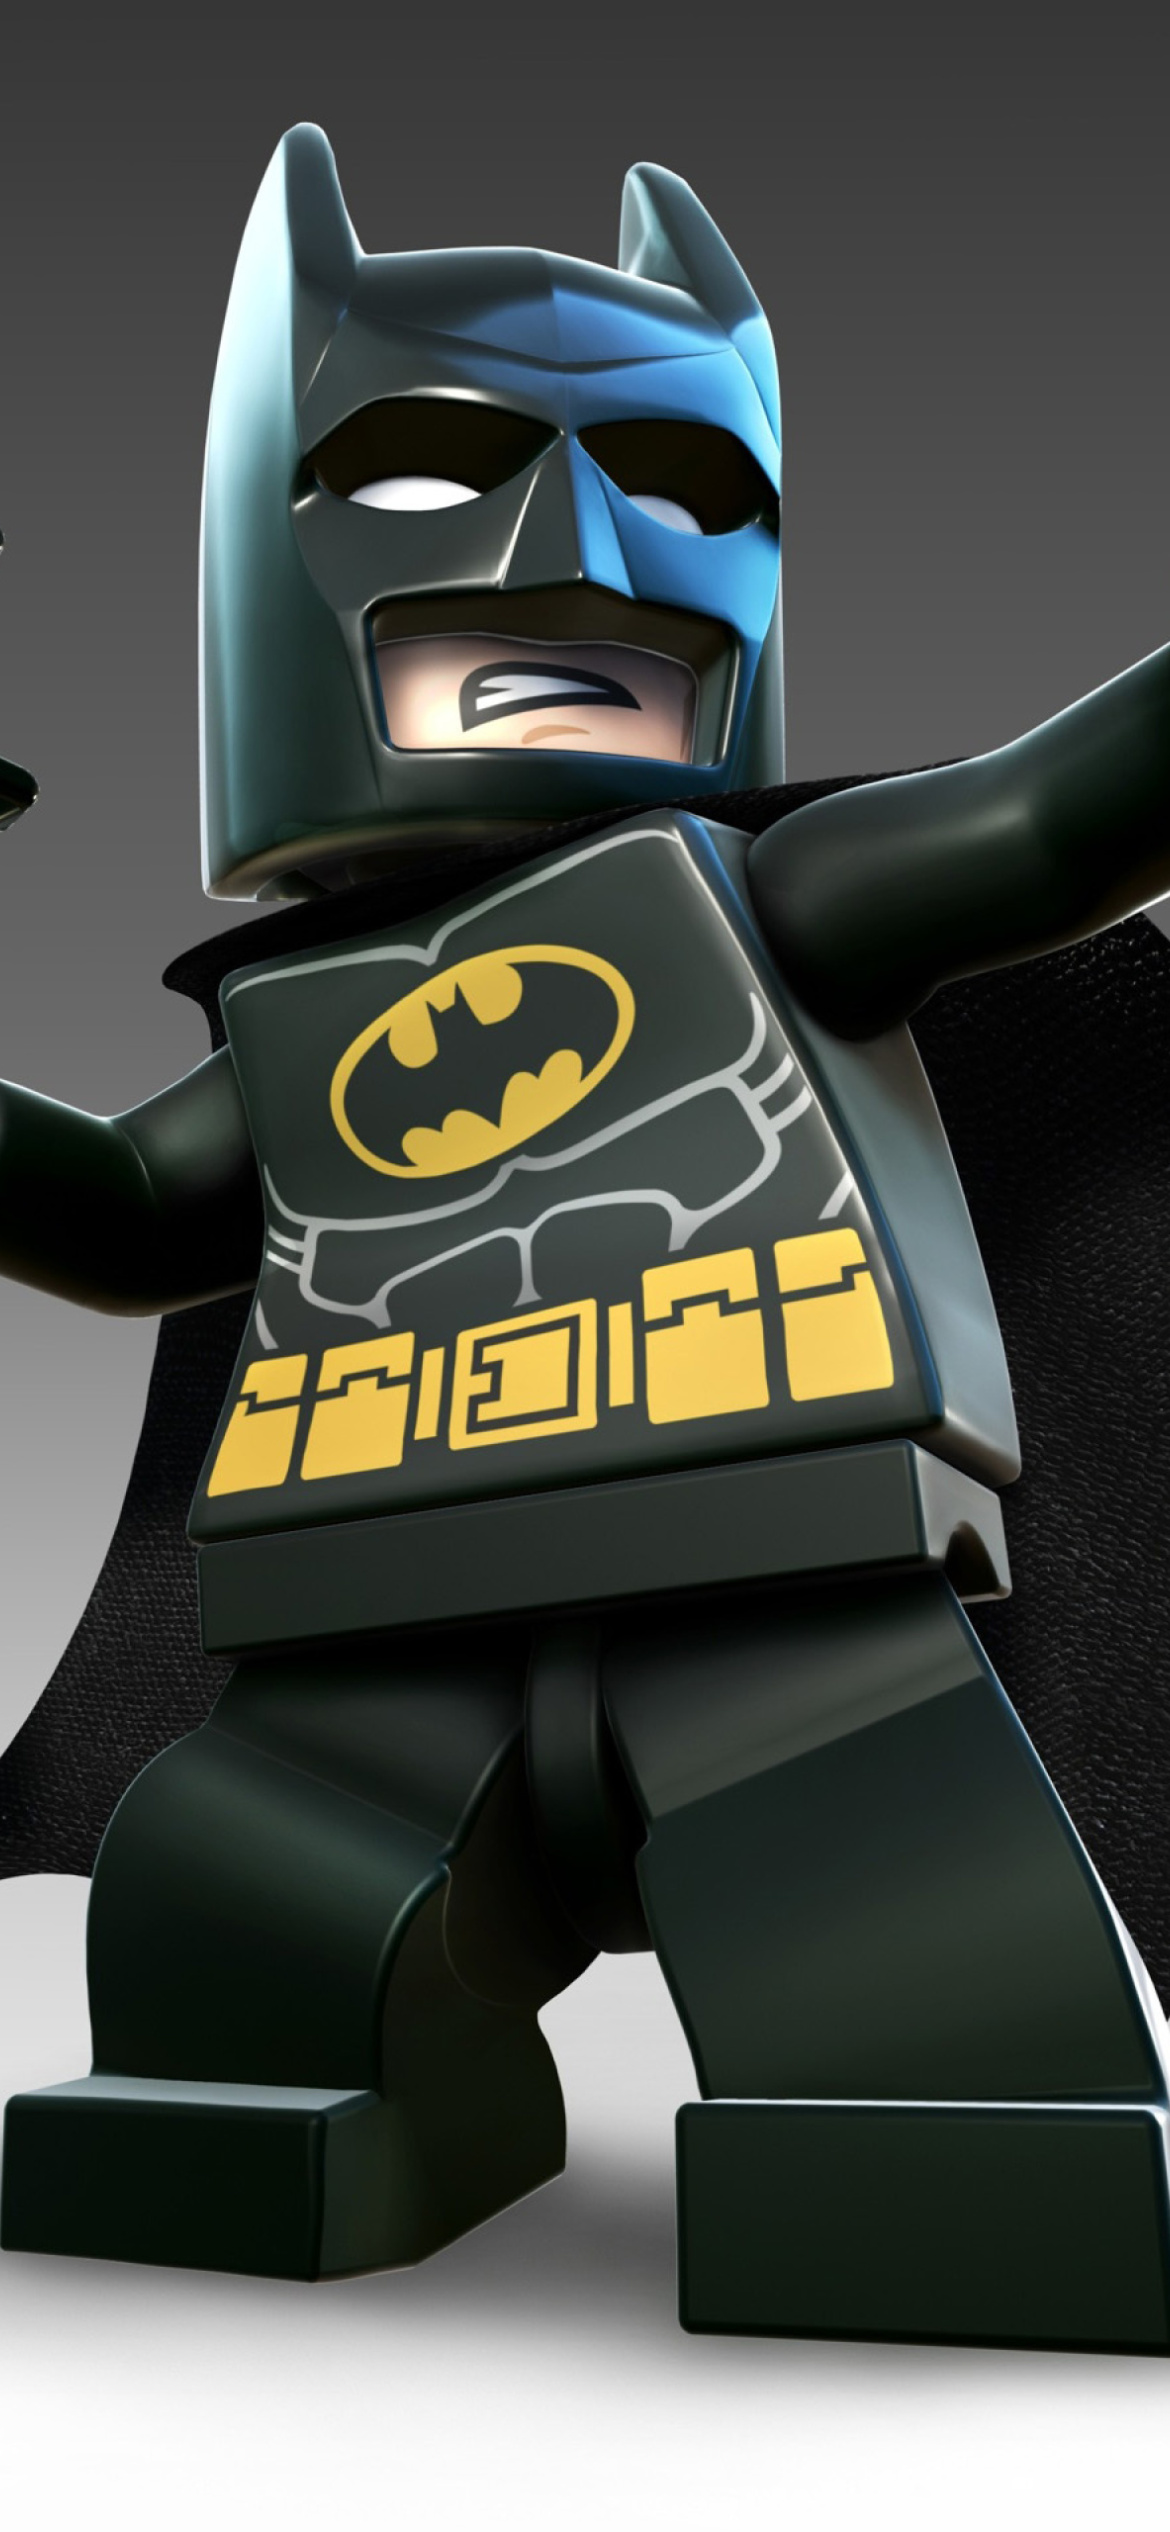 Super Heroes, Lego Batman wallpaper 1170x2532